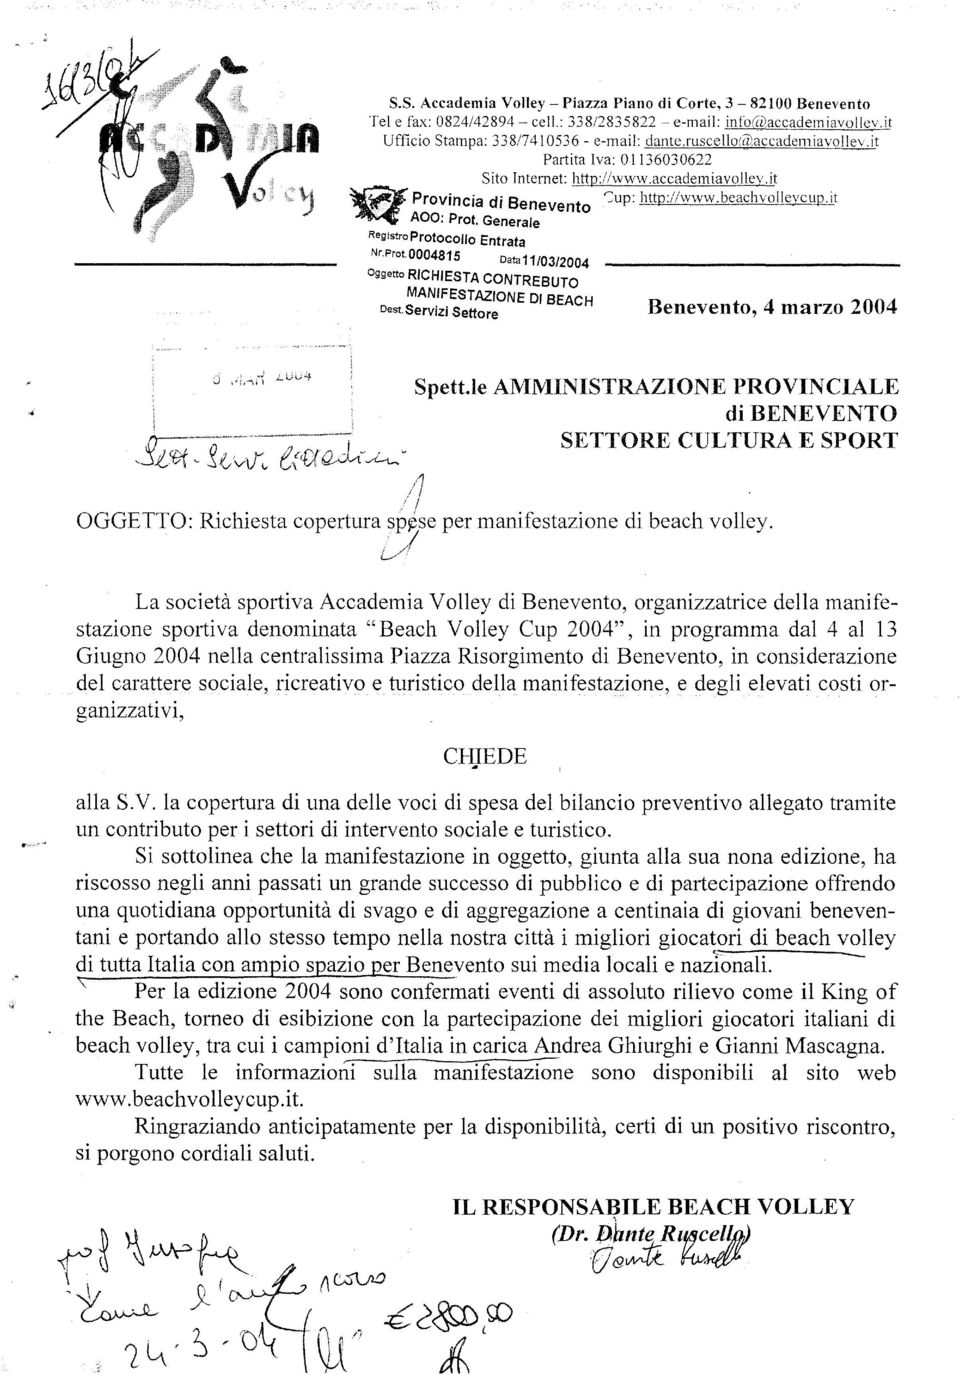 Generale RegistroProtocOllo Entrata Nr.Prot. 0004815 Data 11/03/2004 Oggetto RICHIESTA CONTREBUTO MANIFESTAZIONE DI BEACH Dest.Servizi Settore Benevento, 4 marzo 2004 o Spett.